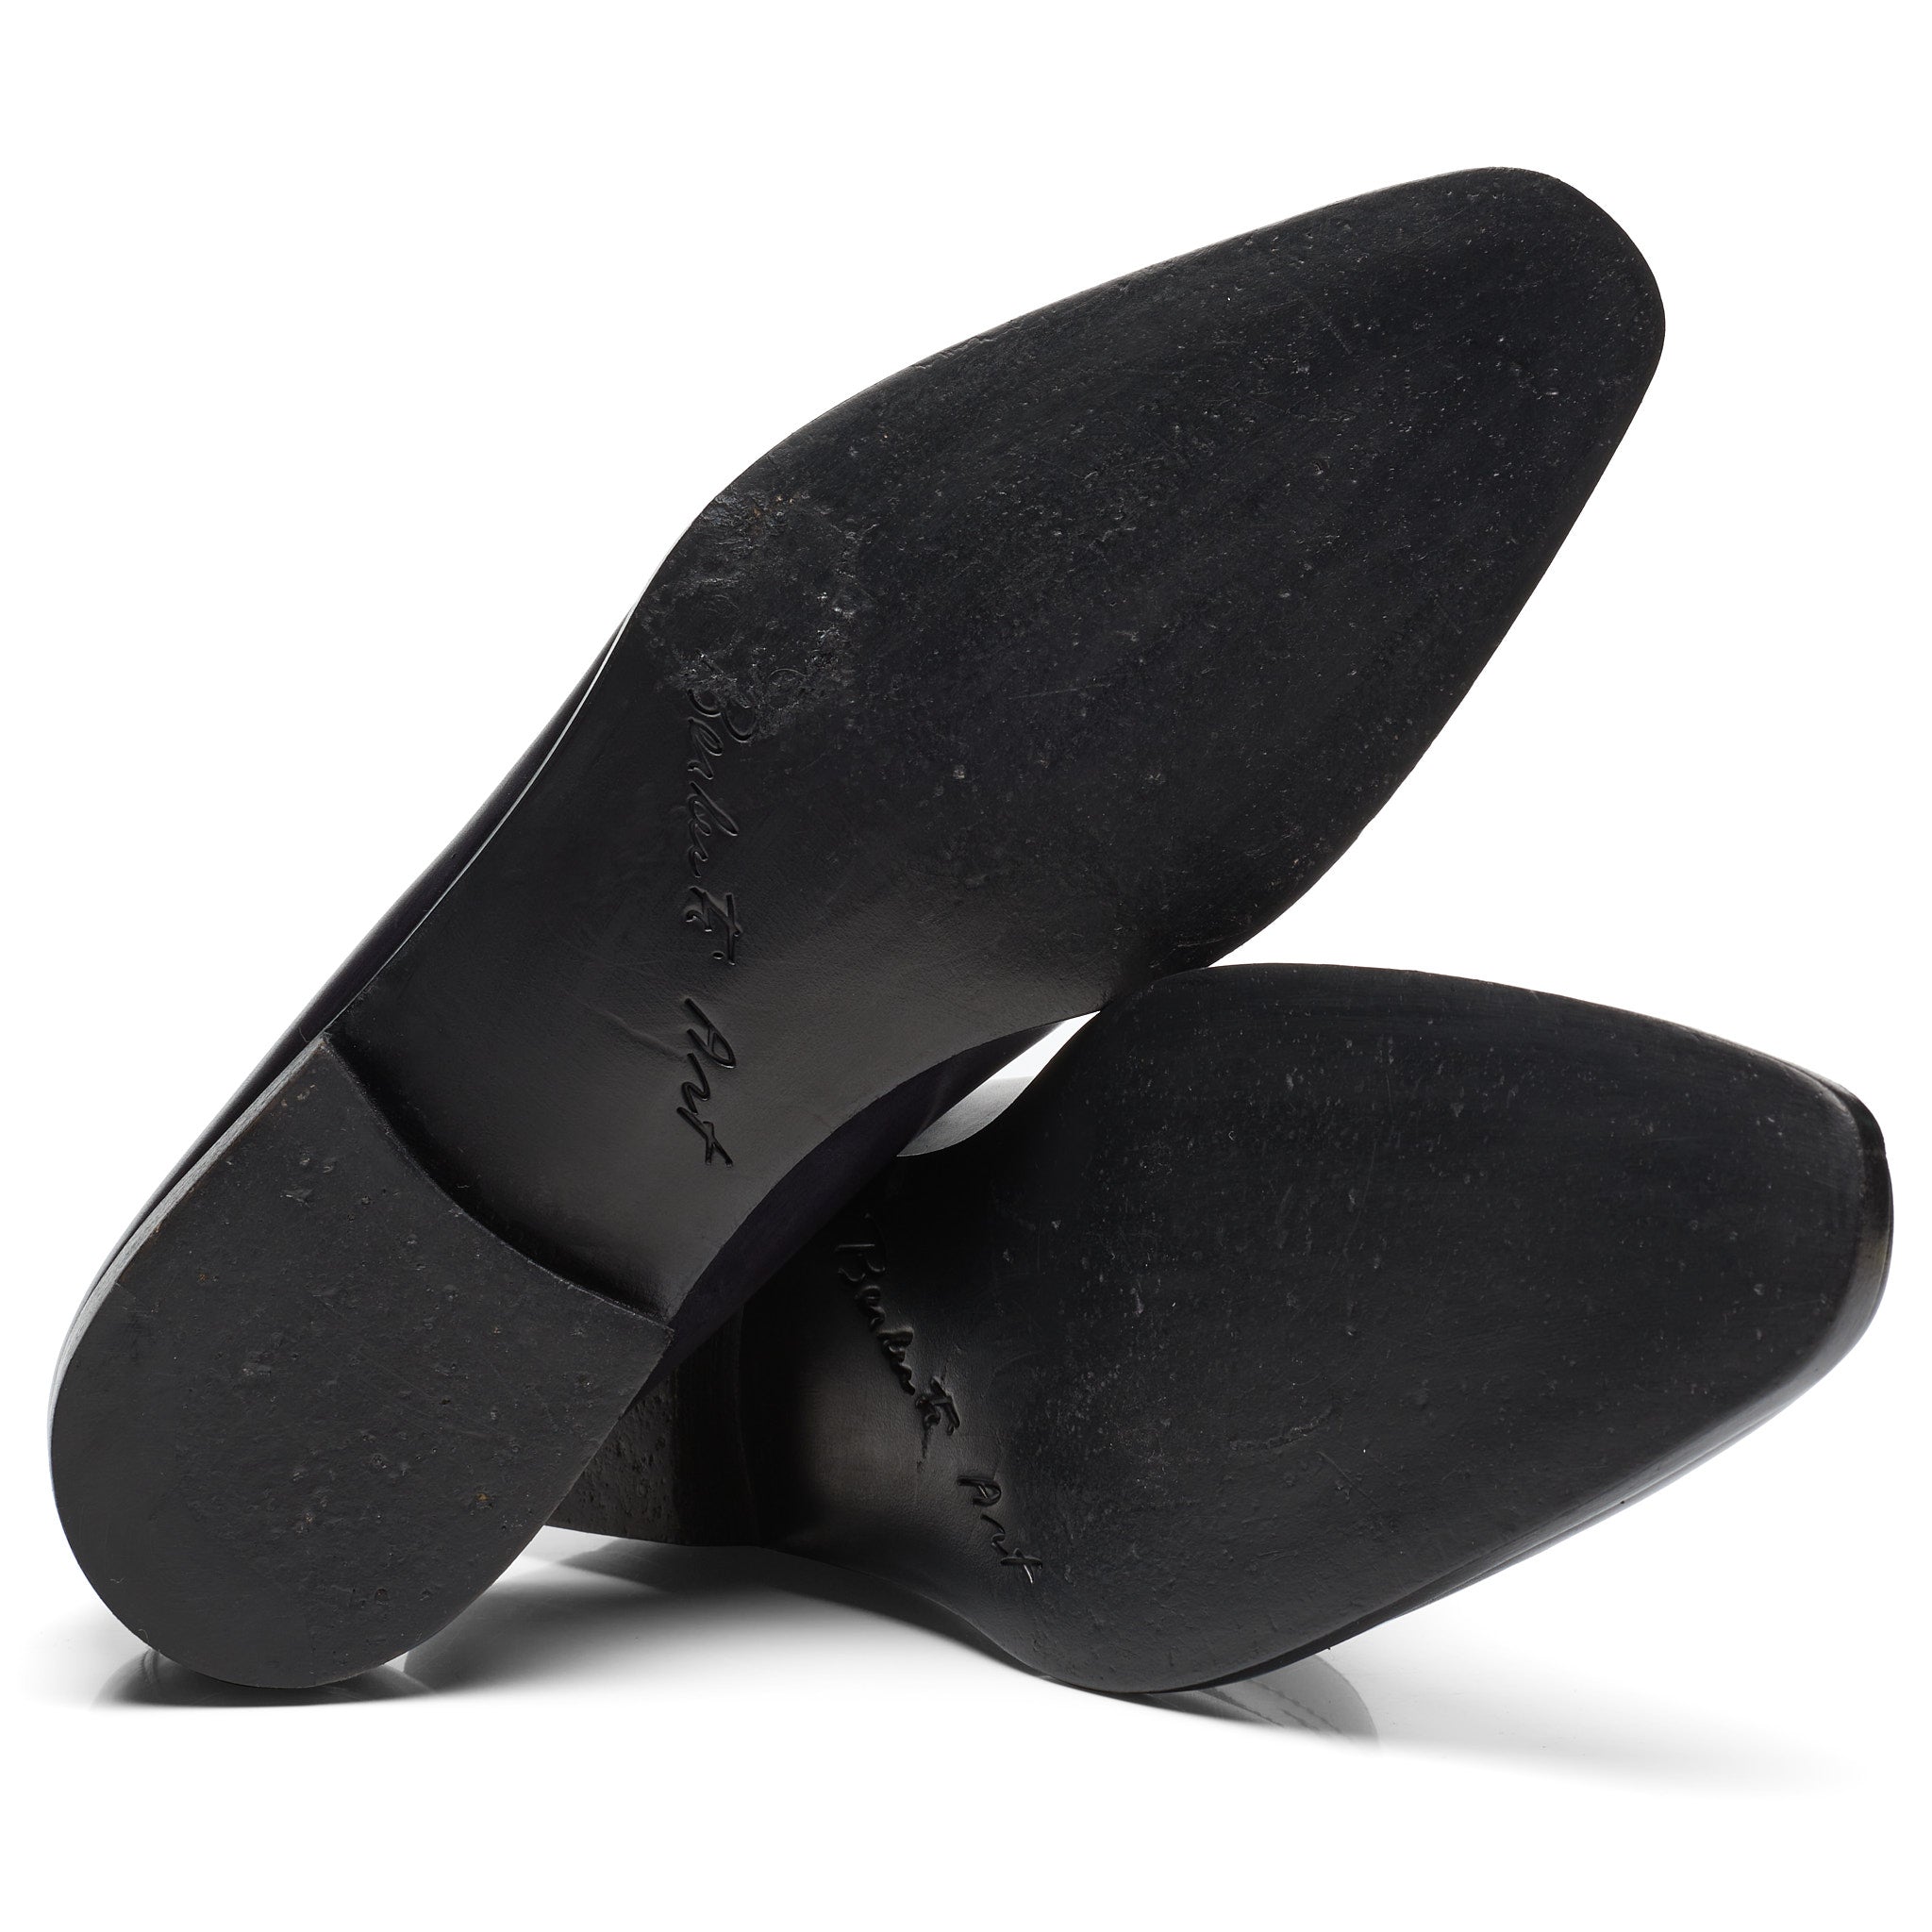 BERLUTI Art Andy Demesure Black-Gray Venezia Calf Custom Loafer Shoes UK 7.5 US 8.5 BERLUTI